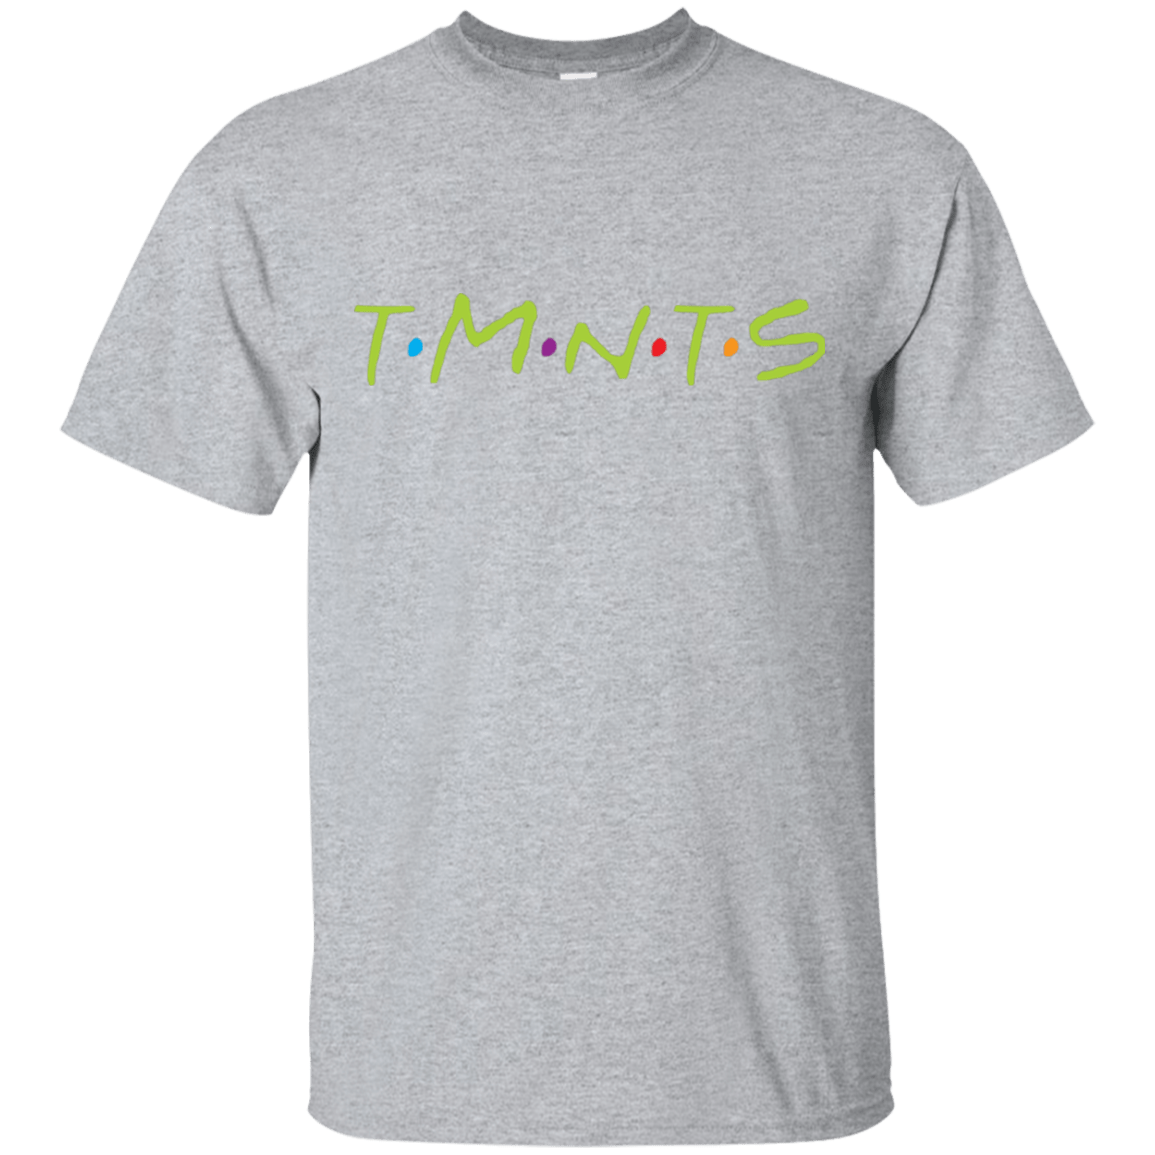 T-Shirts Sport Grey / S TMNTS T-Shirt